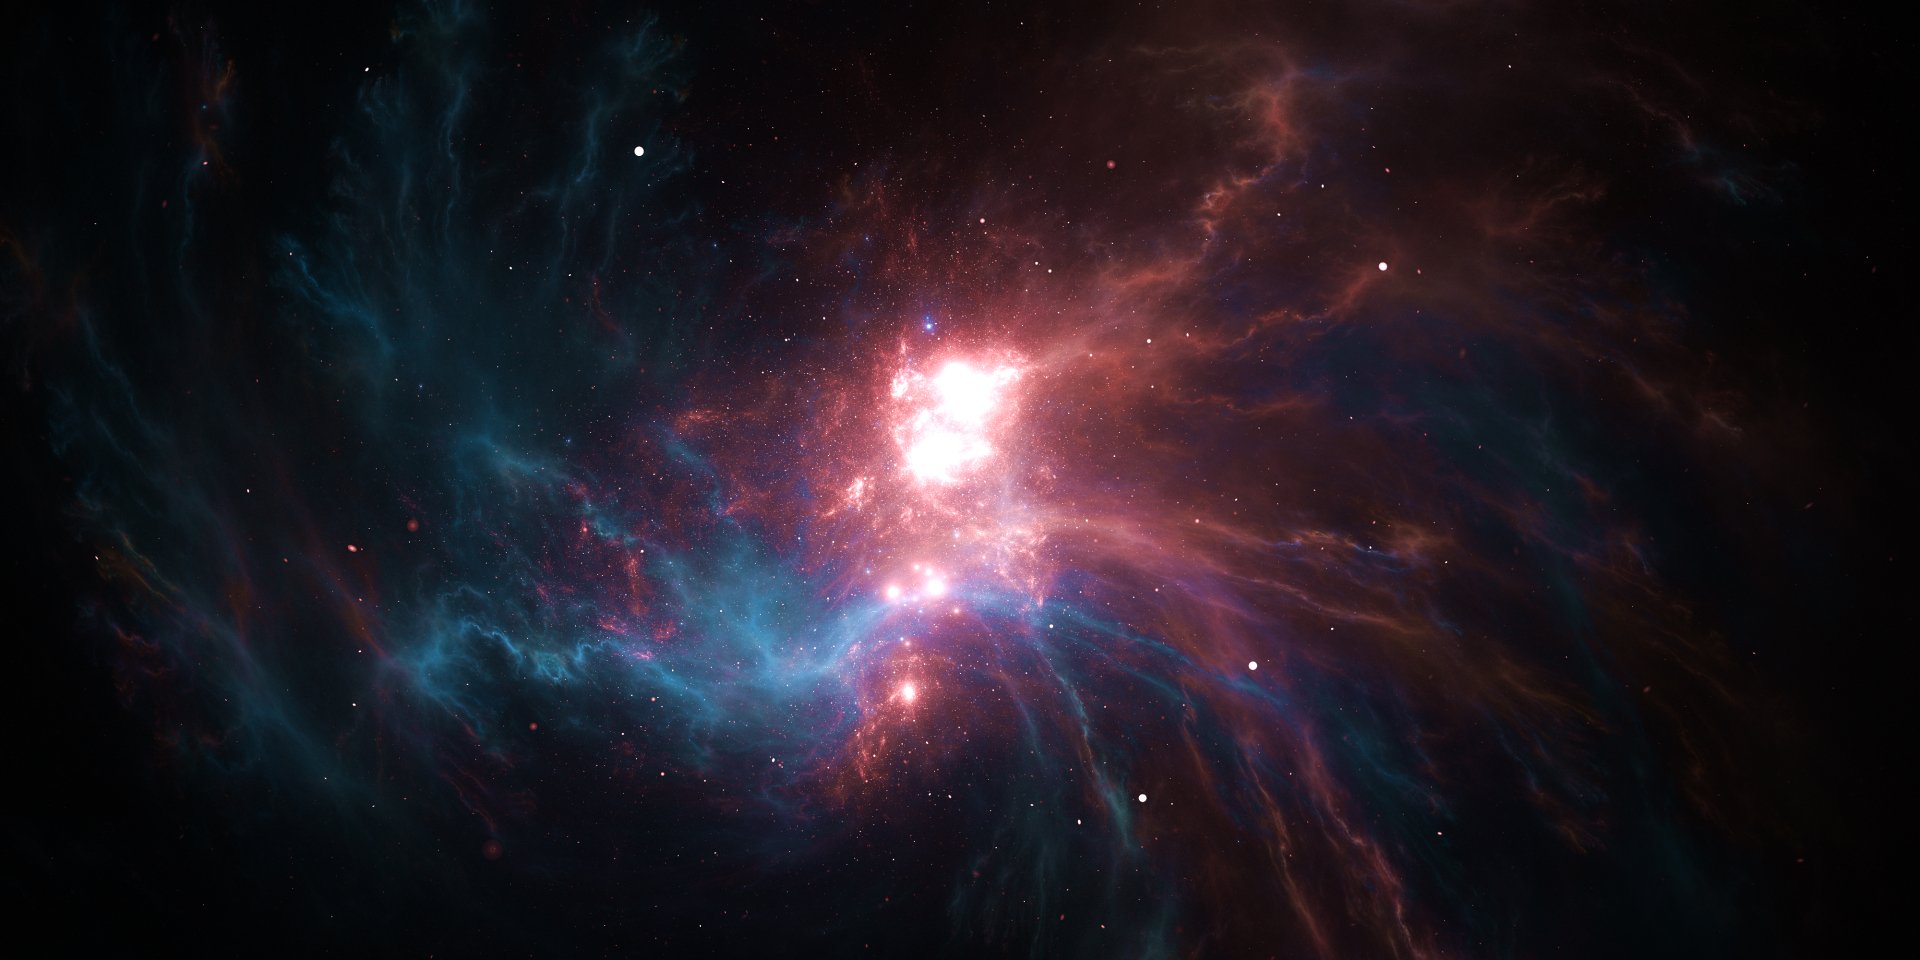 4000x2000 Sci Fi Nebula Wallpaper Background Image. 